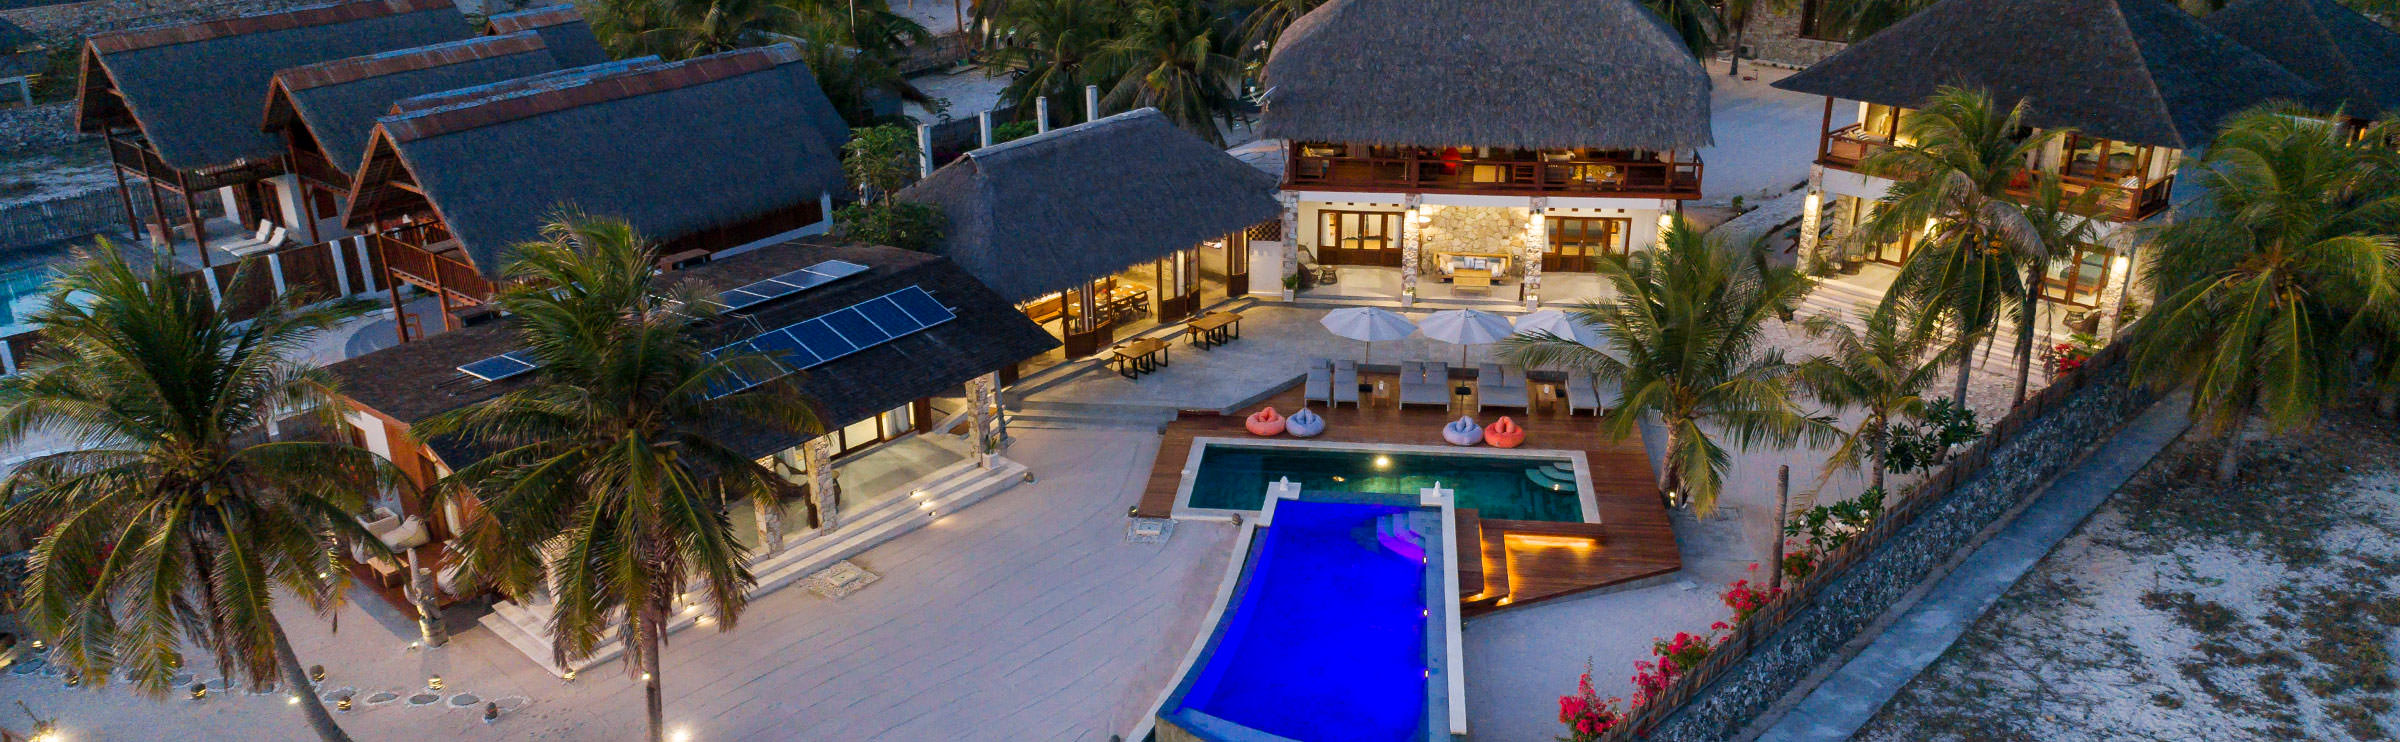 Manduna Resort - Indonesia - Rote Island - Luxury Resort